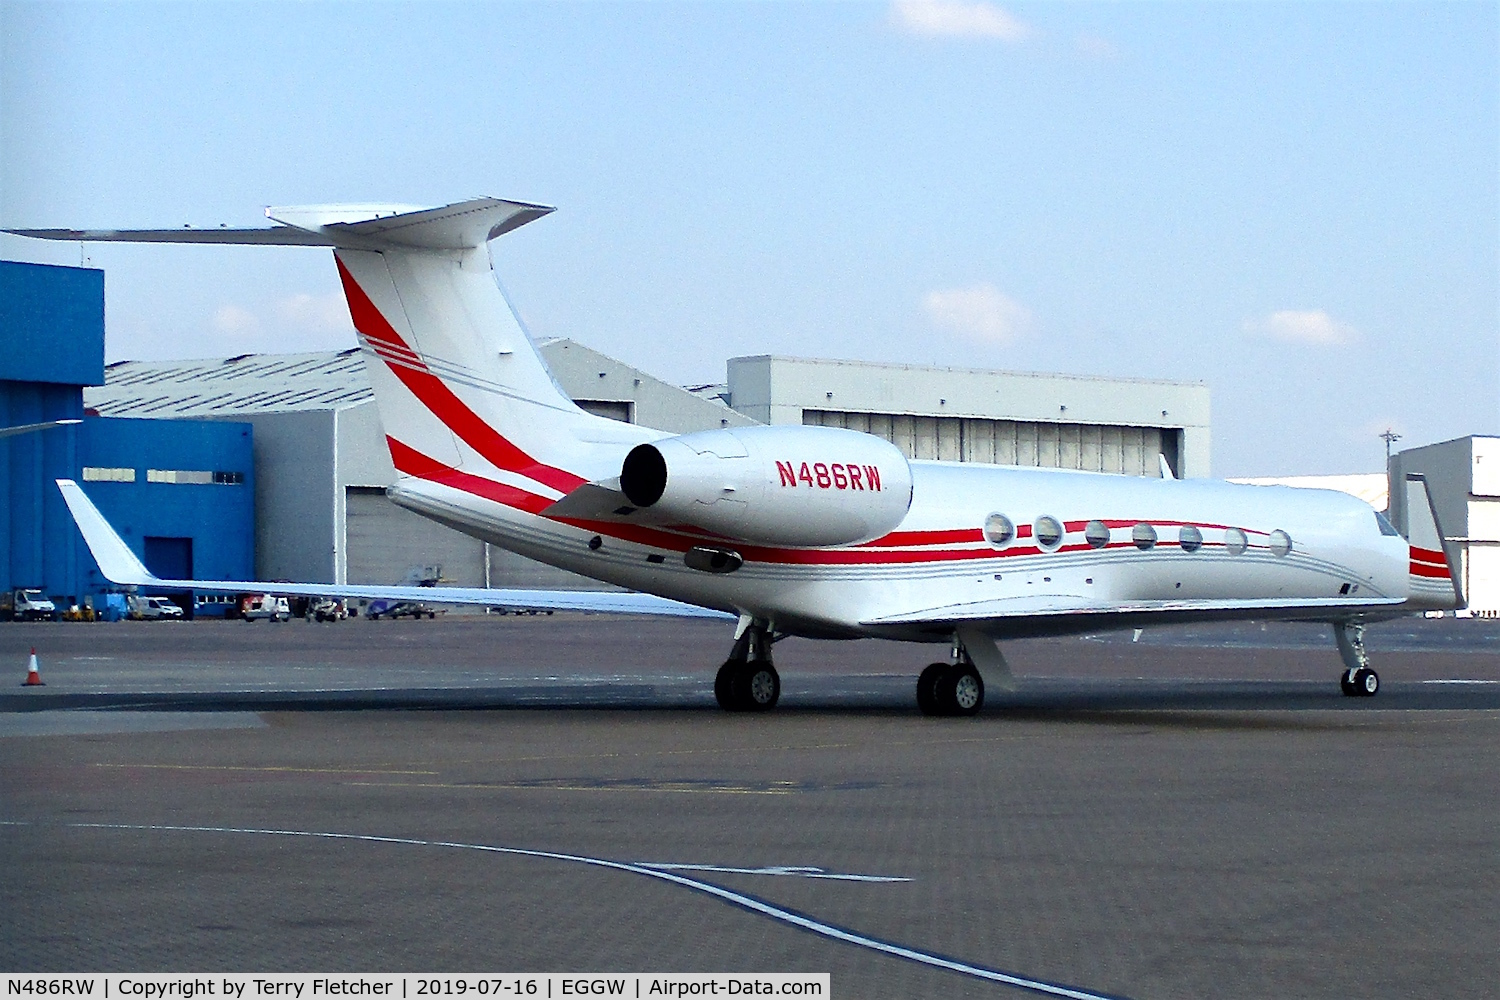 N486RW, 2014 Gulfstream Aerospace GV-SP (G550) C/N 5484, At Luton